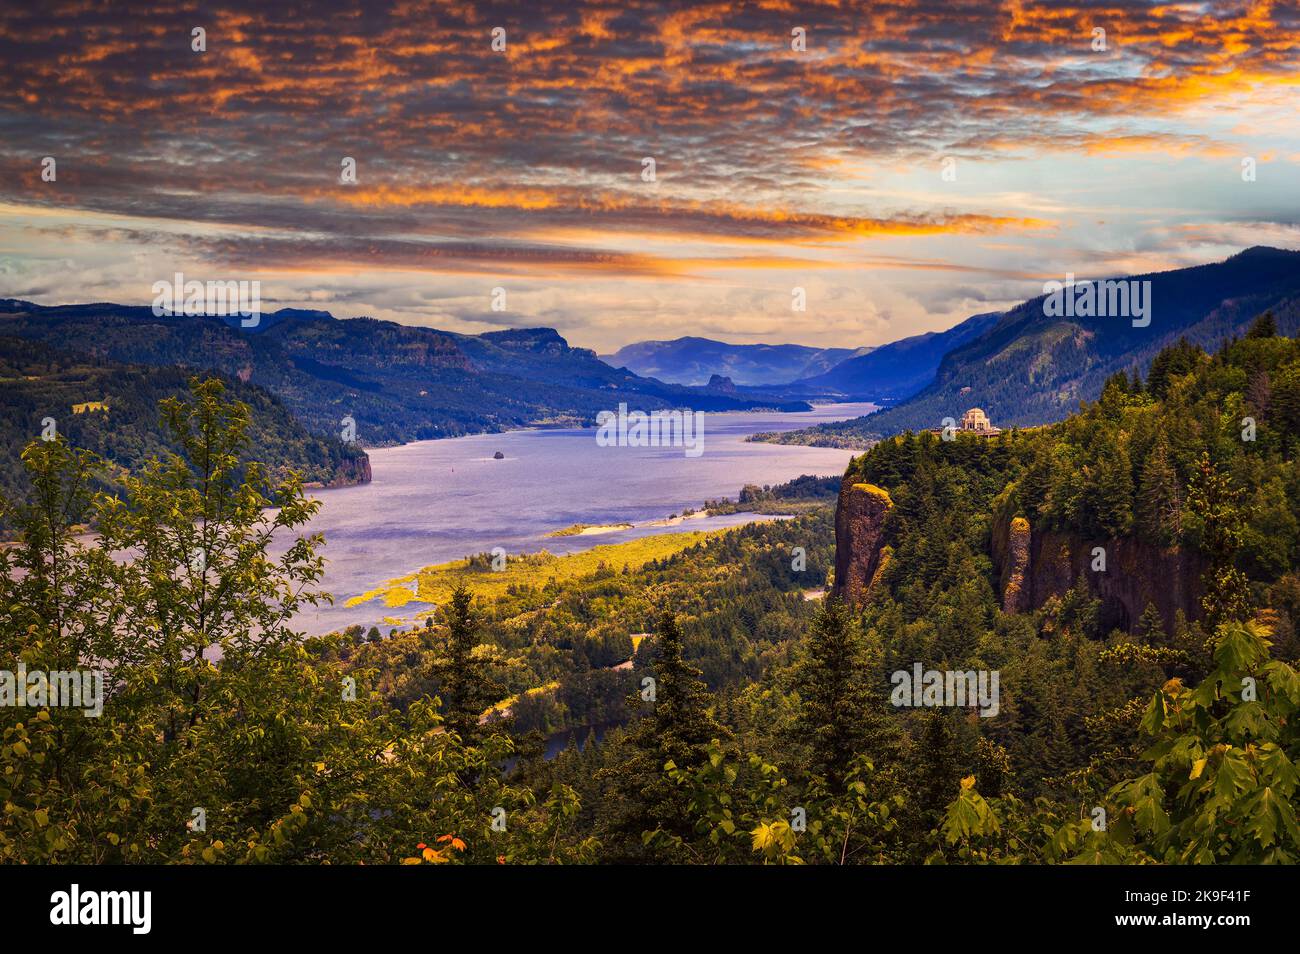 Sonnenuntergang über Crown Point, Vista House und der Columbia River Gorge, Oregon Stockfoto